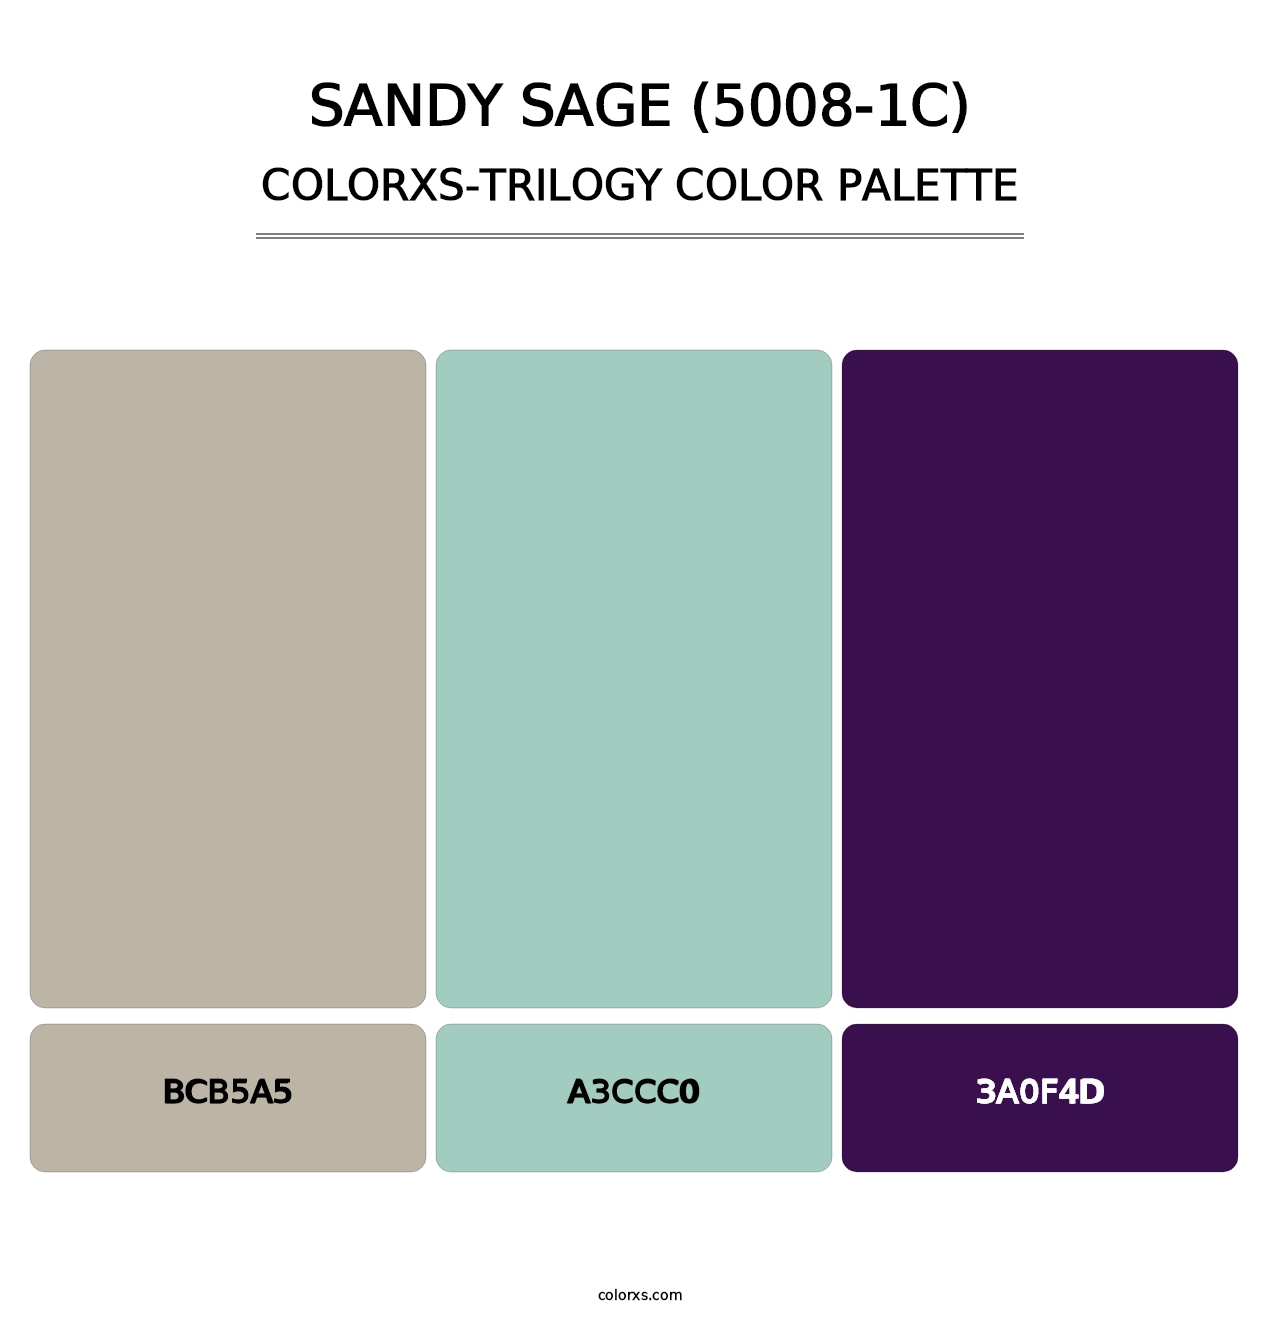 Sandy Sage (5008-1C) - Colorxs Trilogy Palette